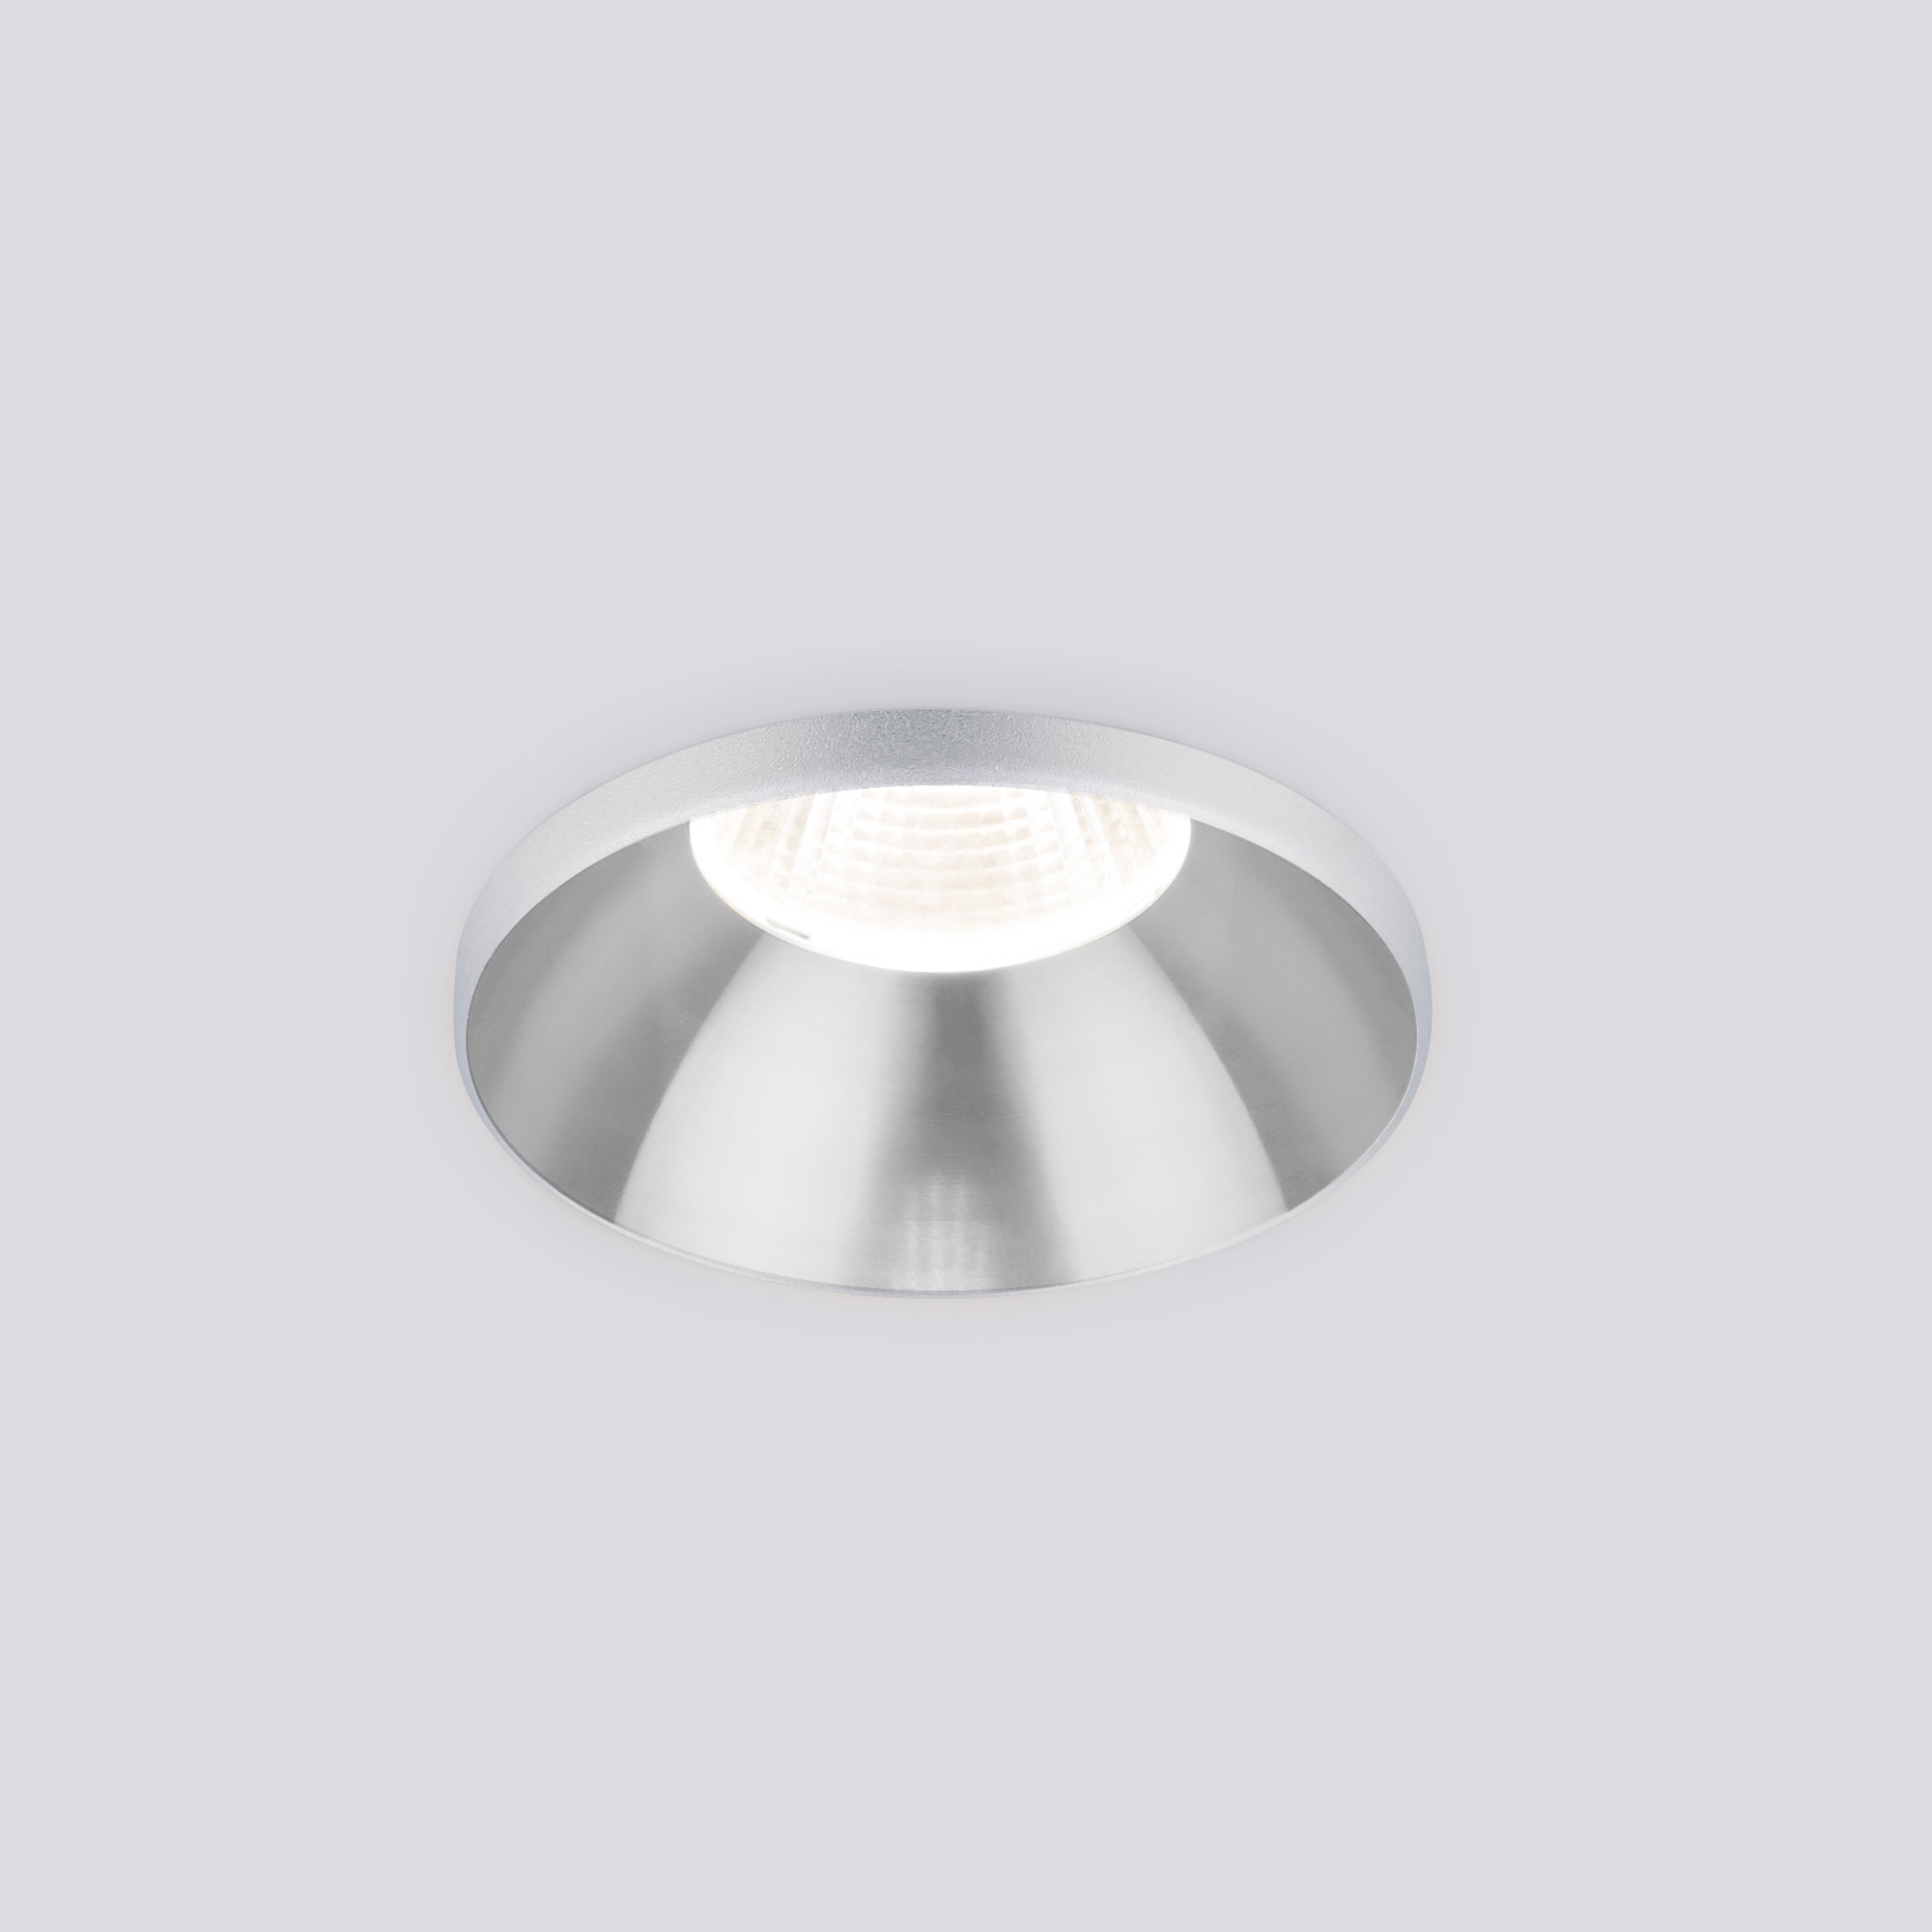 90315741 Светильник точечный светодиодный встраиваемый 25026/LED Nuta a056782 под отверстие нейтральный белый свет цвет серебряный STLM-0181833 ELEKTROSTANDARD